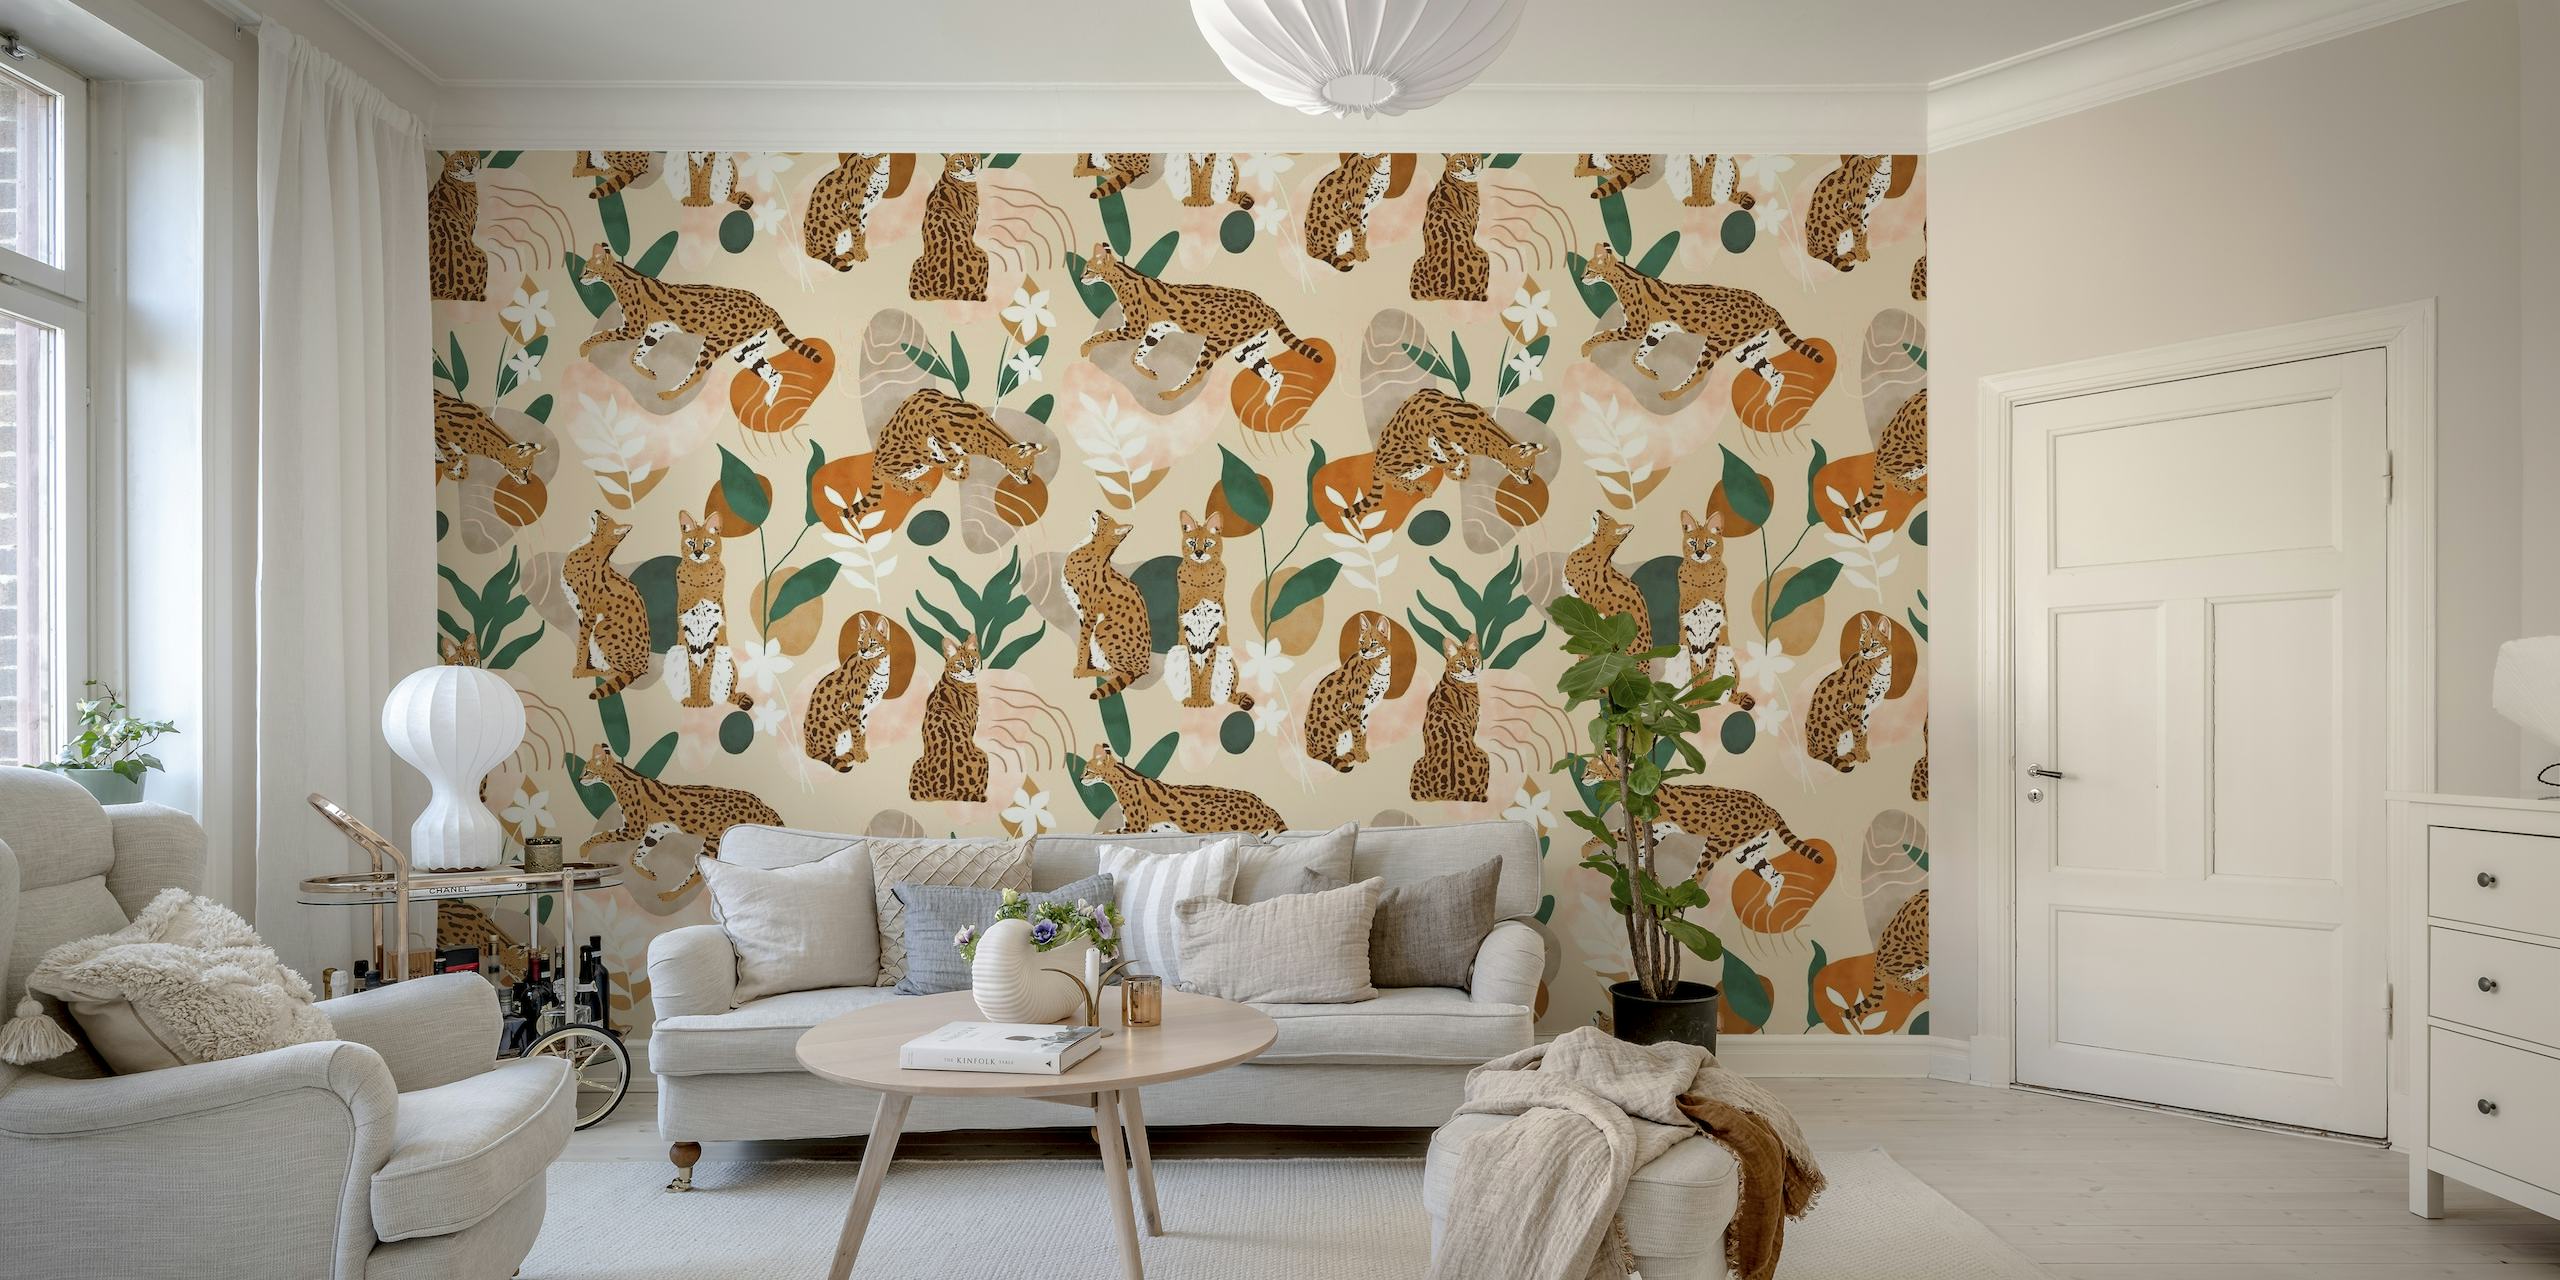 Serval kat abstracte natuur muurschildering met gestileerde katachtigen en plantmotieven op een neutrale achtergrond.